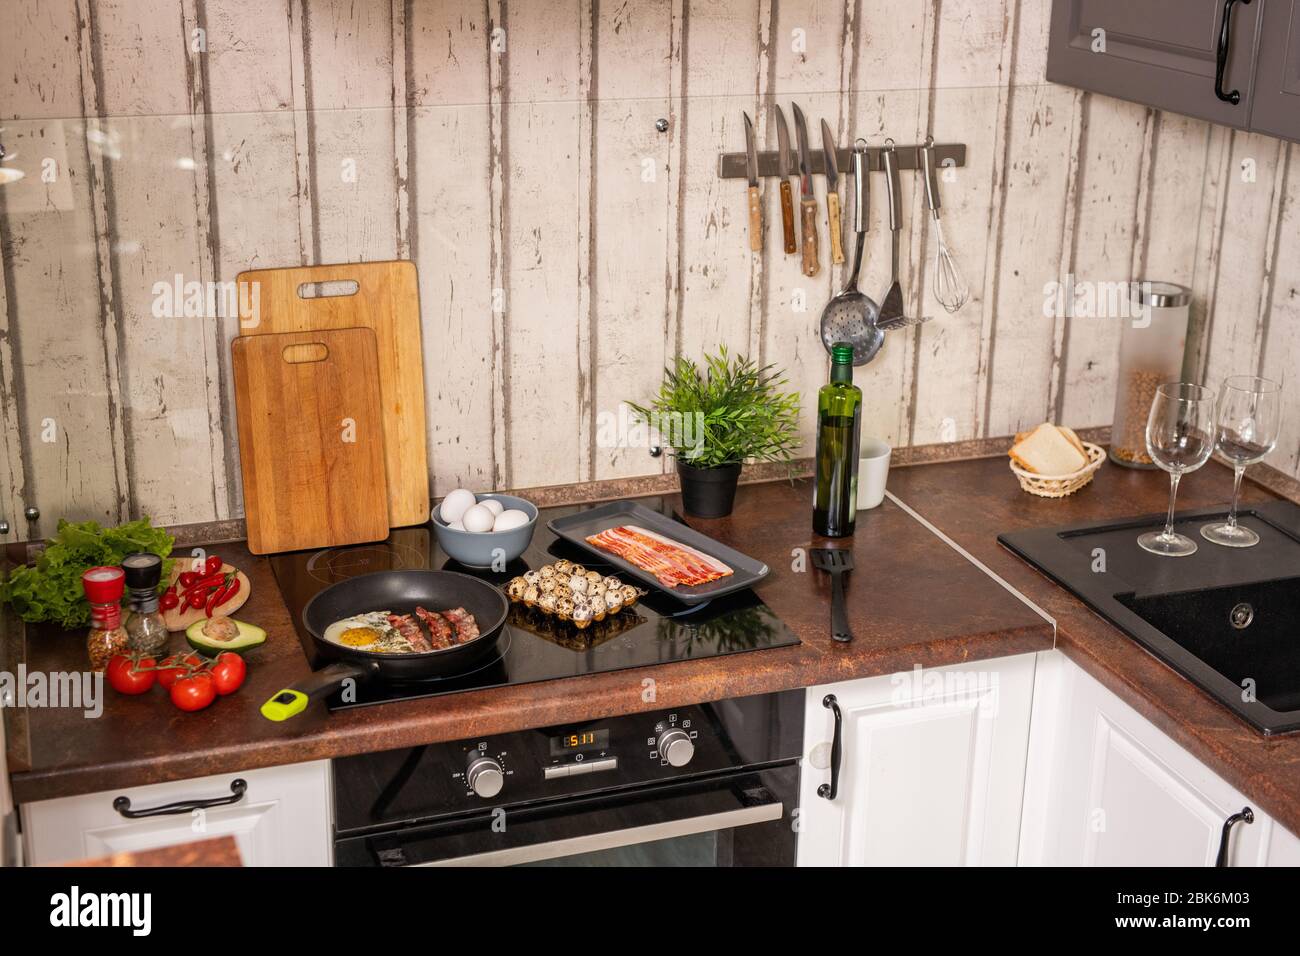 Teil der modernen Küche mit Spüle und Elektroherd mit Bratspeck und Eiern umgeben von Geschirr und Lebensmitteln Stockfoto